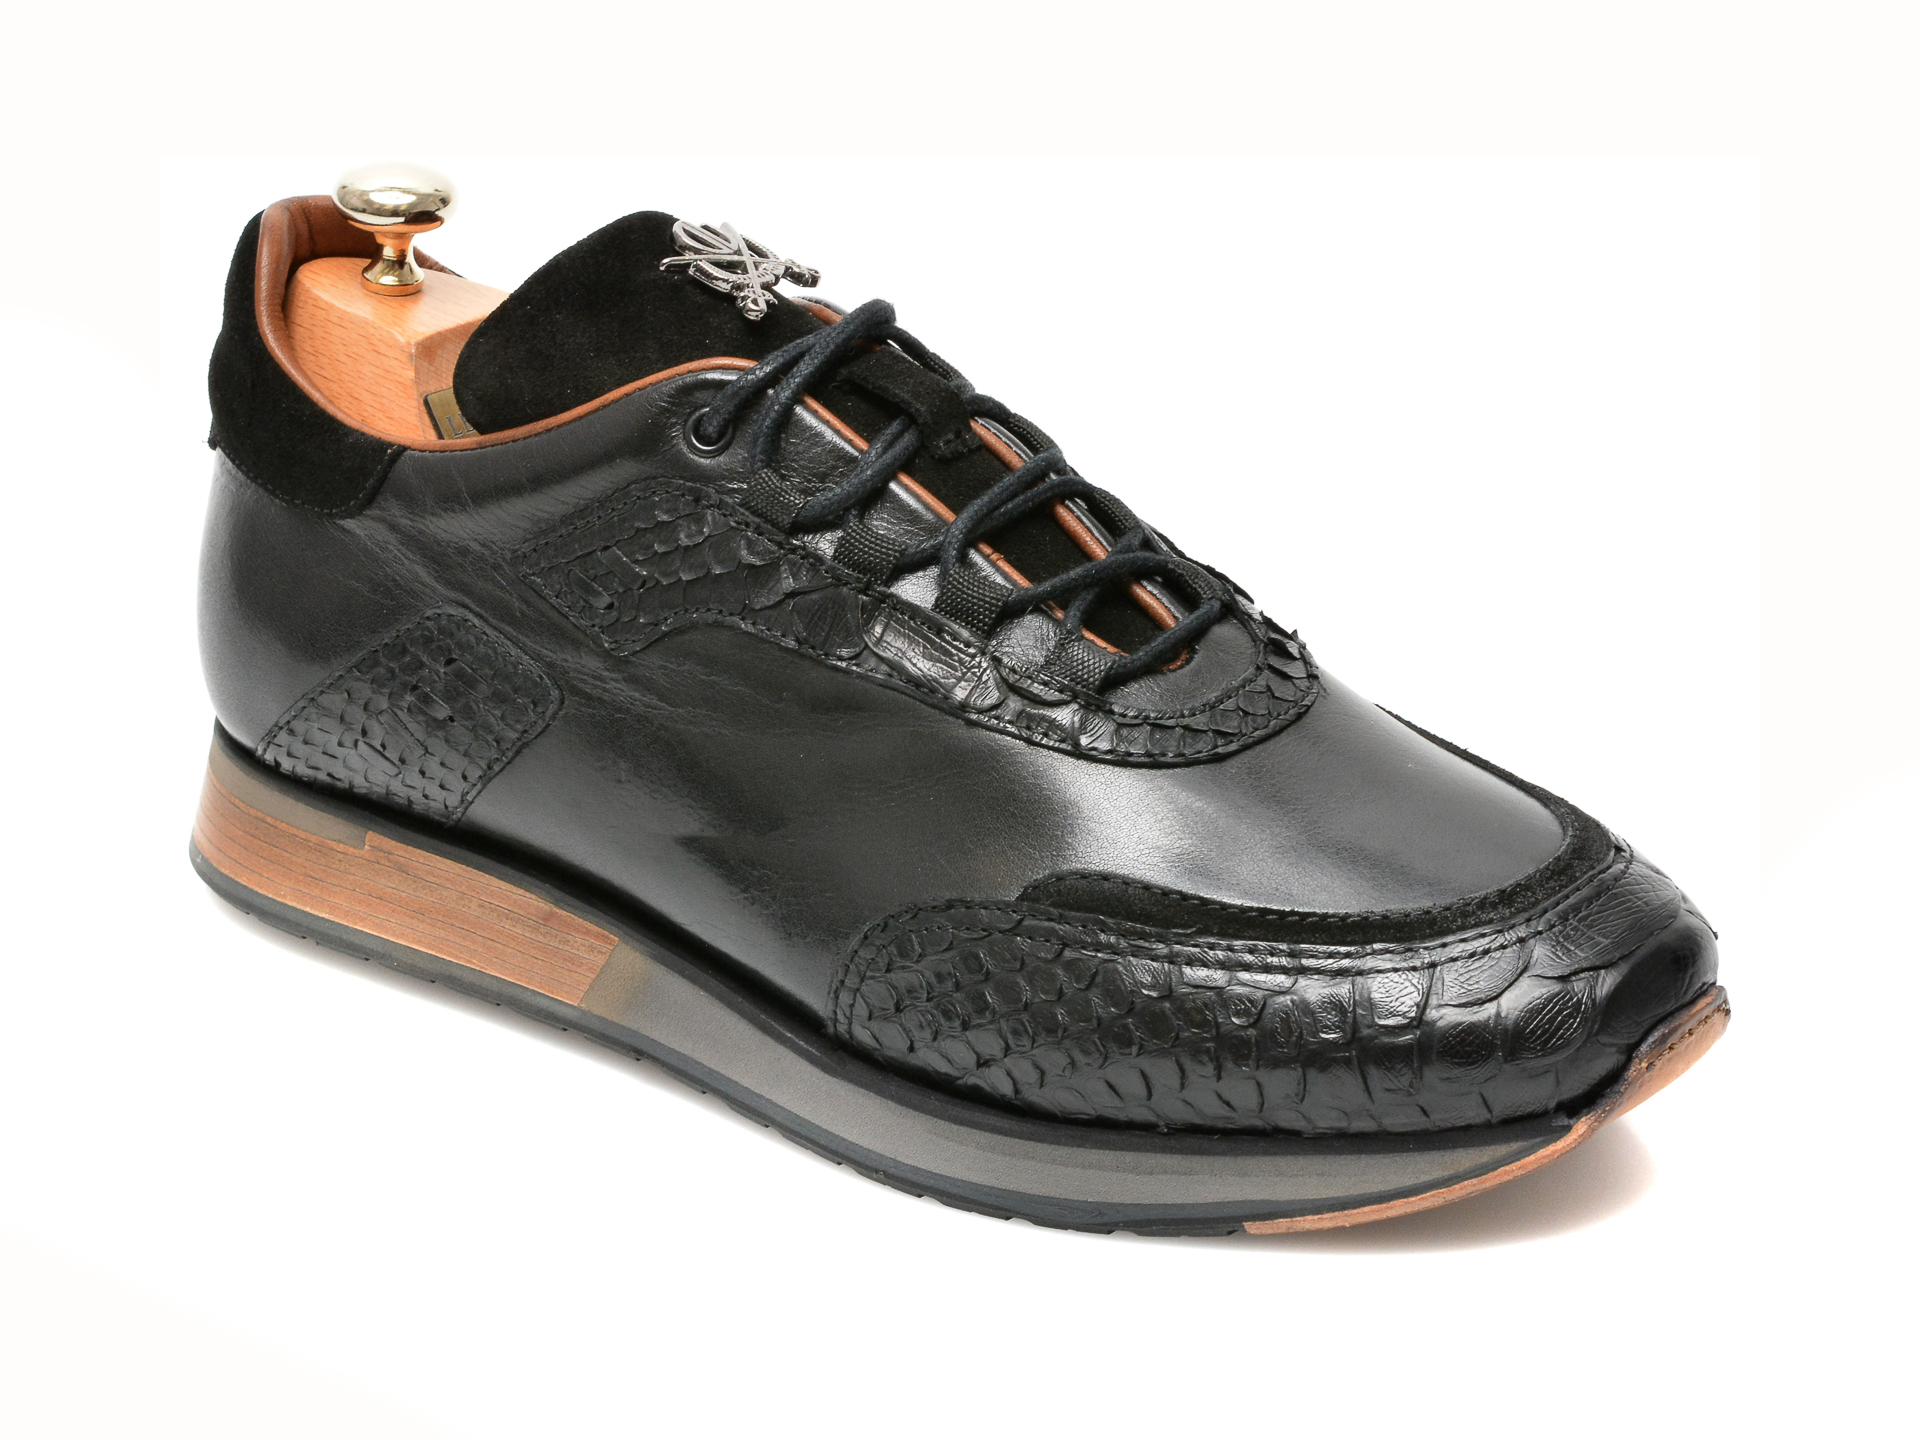 Pantofi LE COLONEL negri, 62828, din piele naturala Le Colonel imagine 2022 reducere